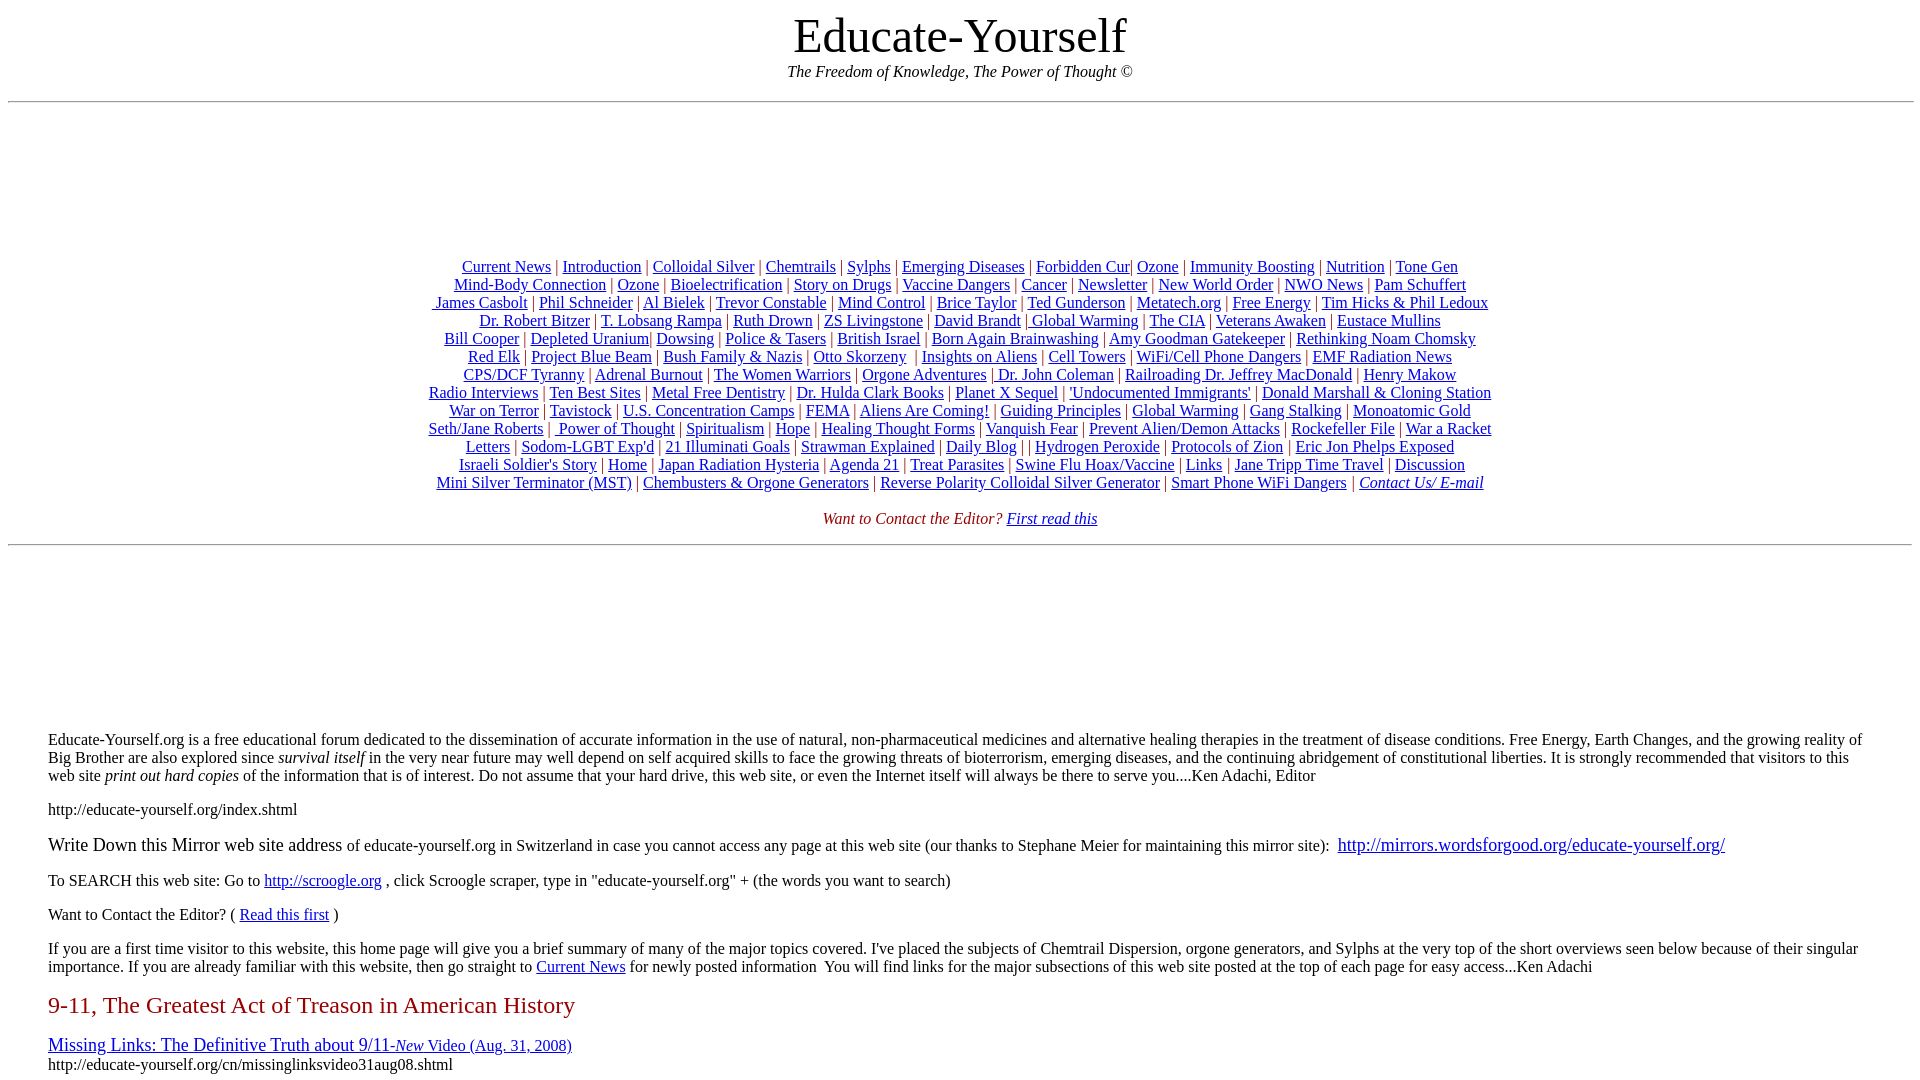 État du site web educate-yourself.org est   EN LIGNE